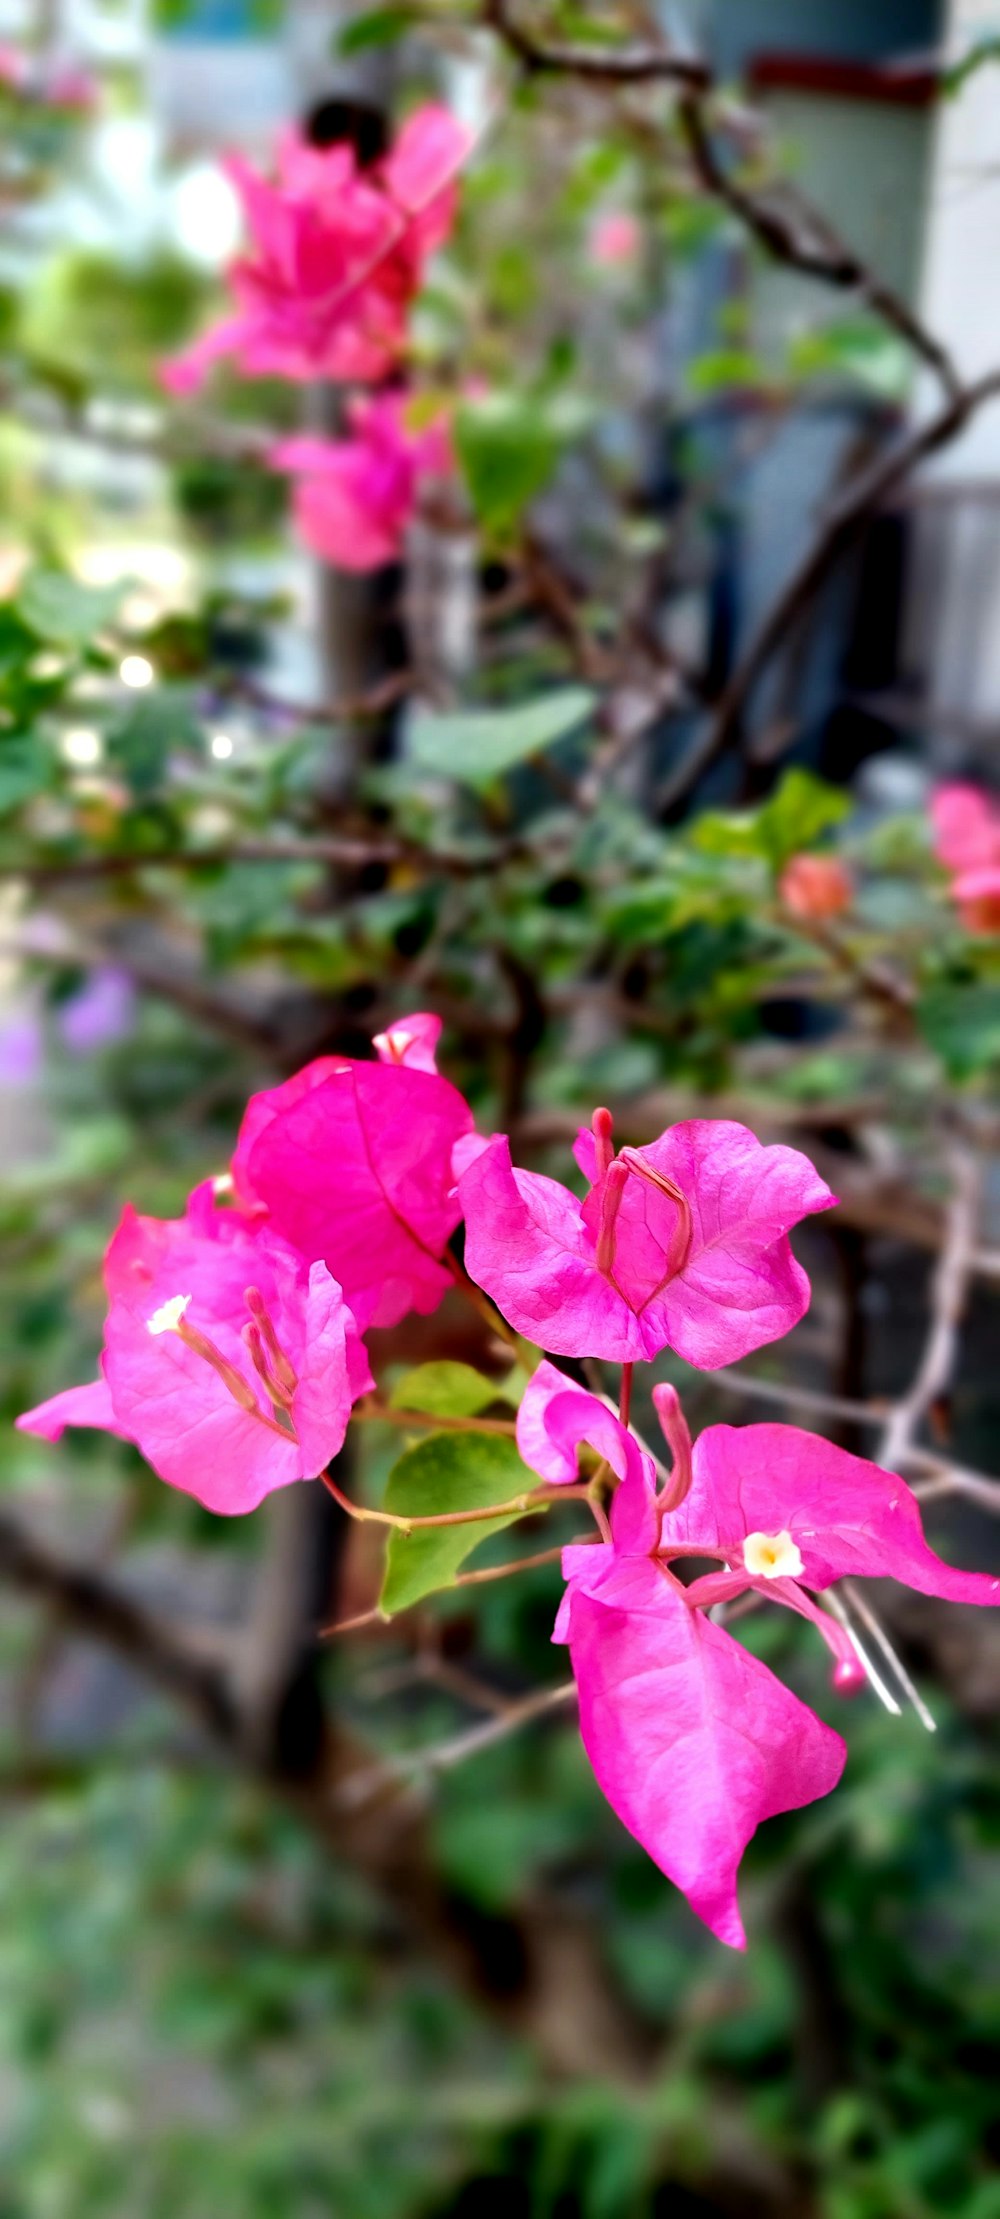 flores cor-de-rosa estão desabrochando em um jardim